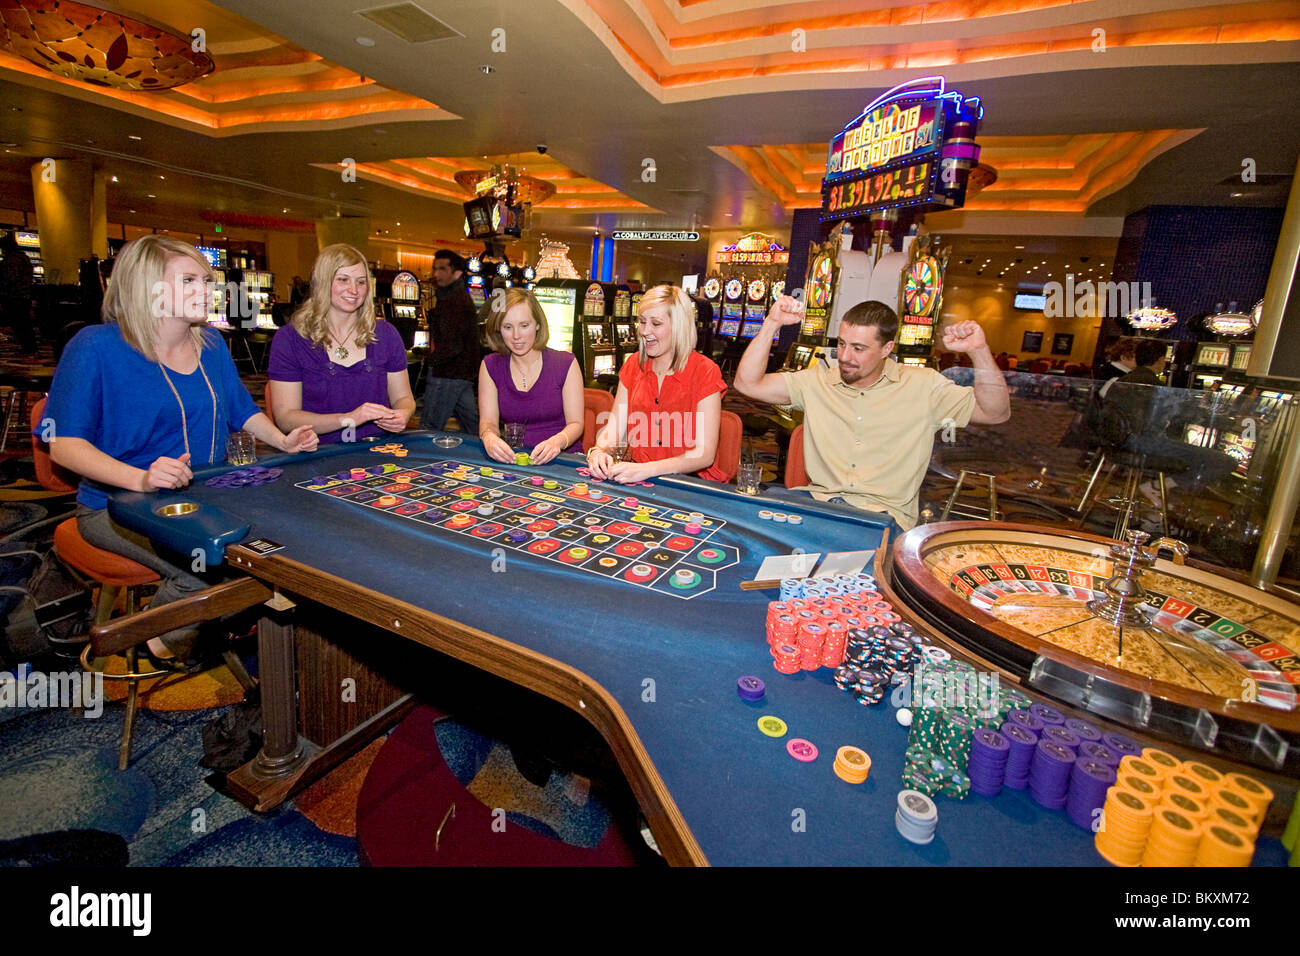 Di scena sul piano di gioco di casino - entusiasti giocatori scommettere come ruota della roulette gira, South Lake Tahoe, Nevada, Stati Uniti d'America. Foto Stock